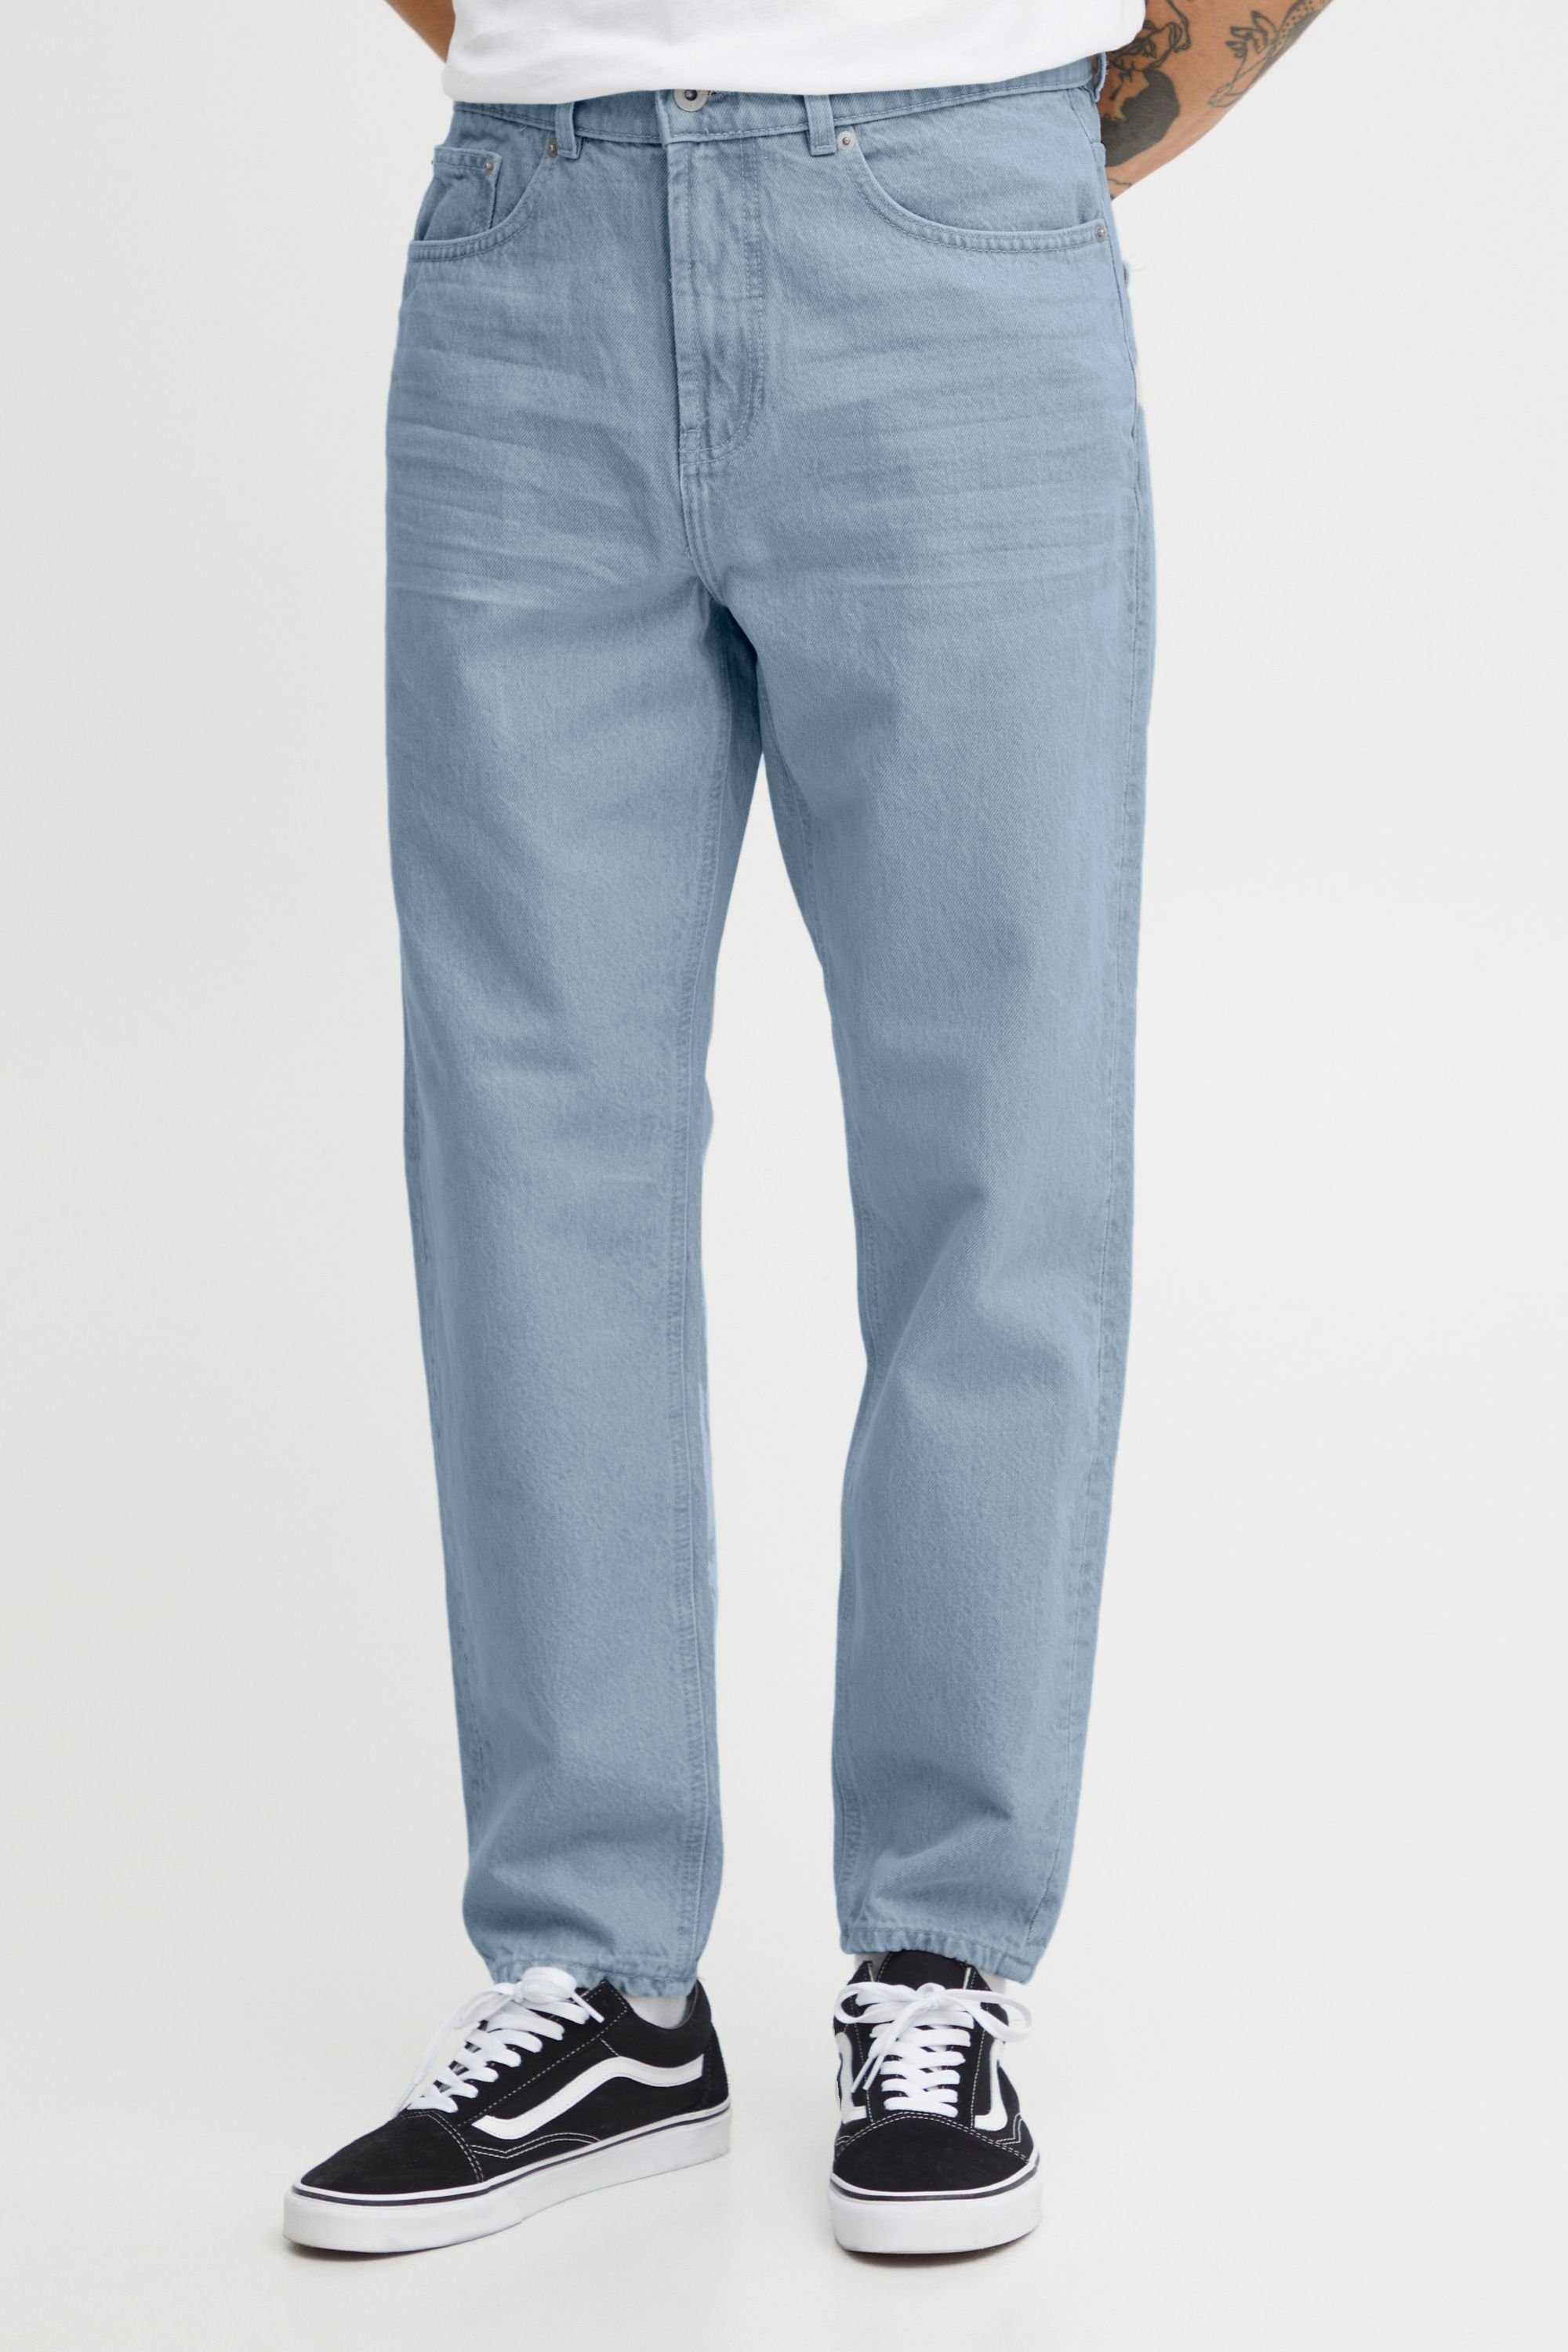 !Solid SDBoaz Light Blue (700027) Denim 5-Pocket-Jeans